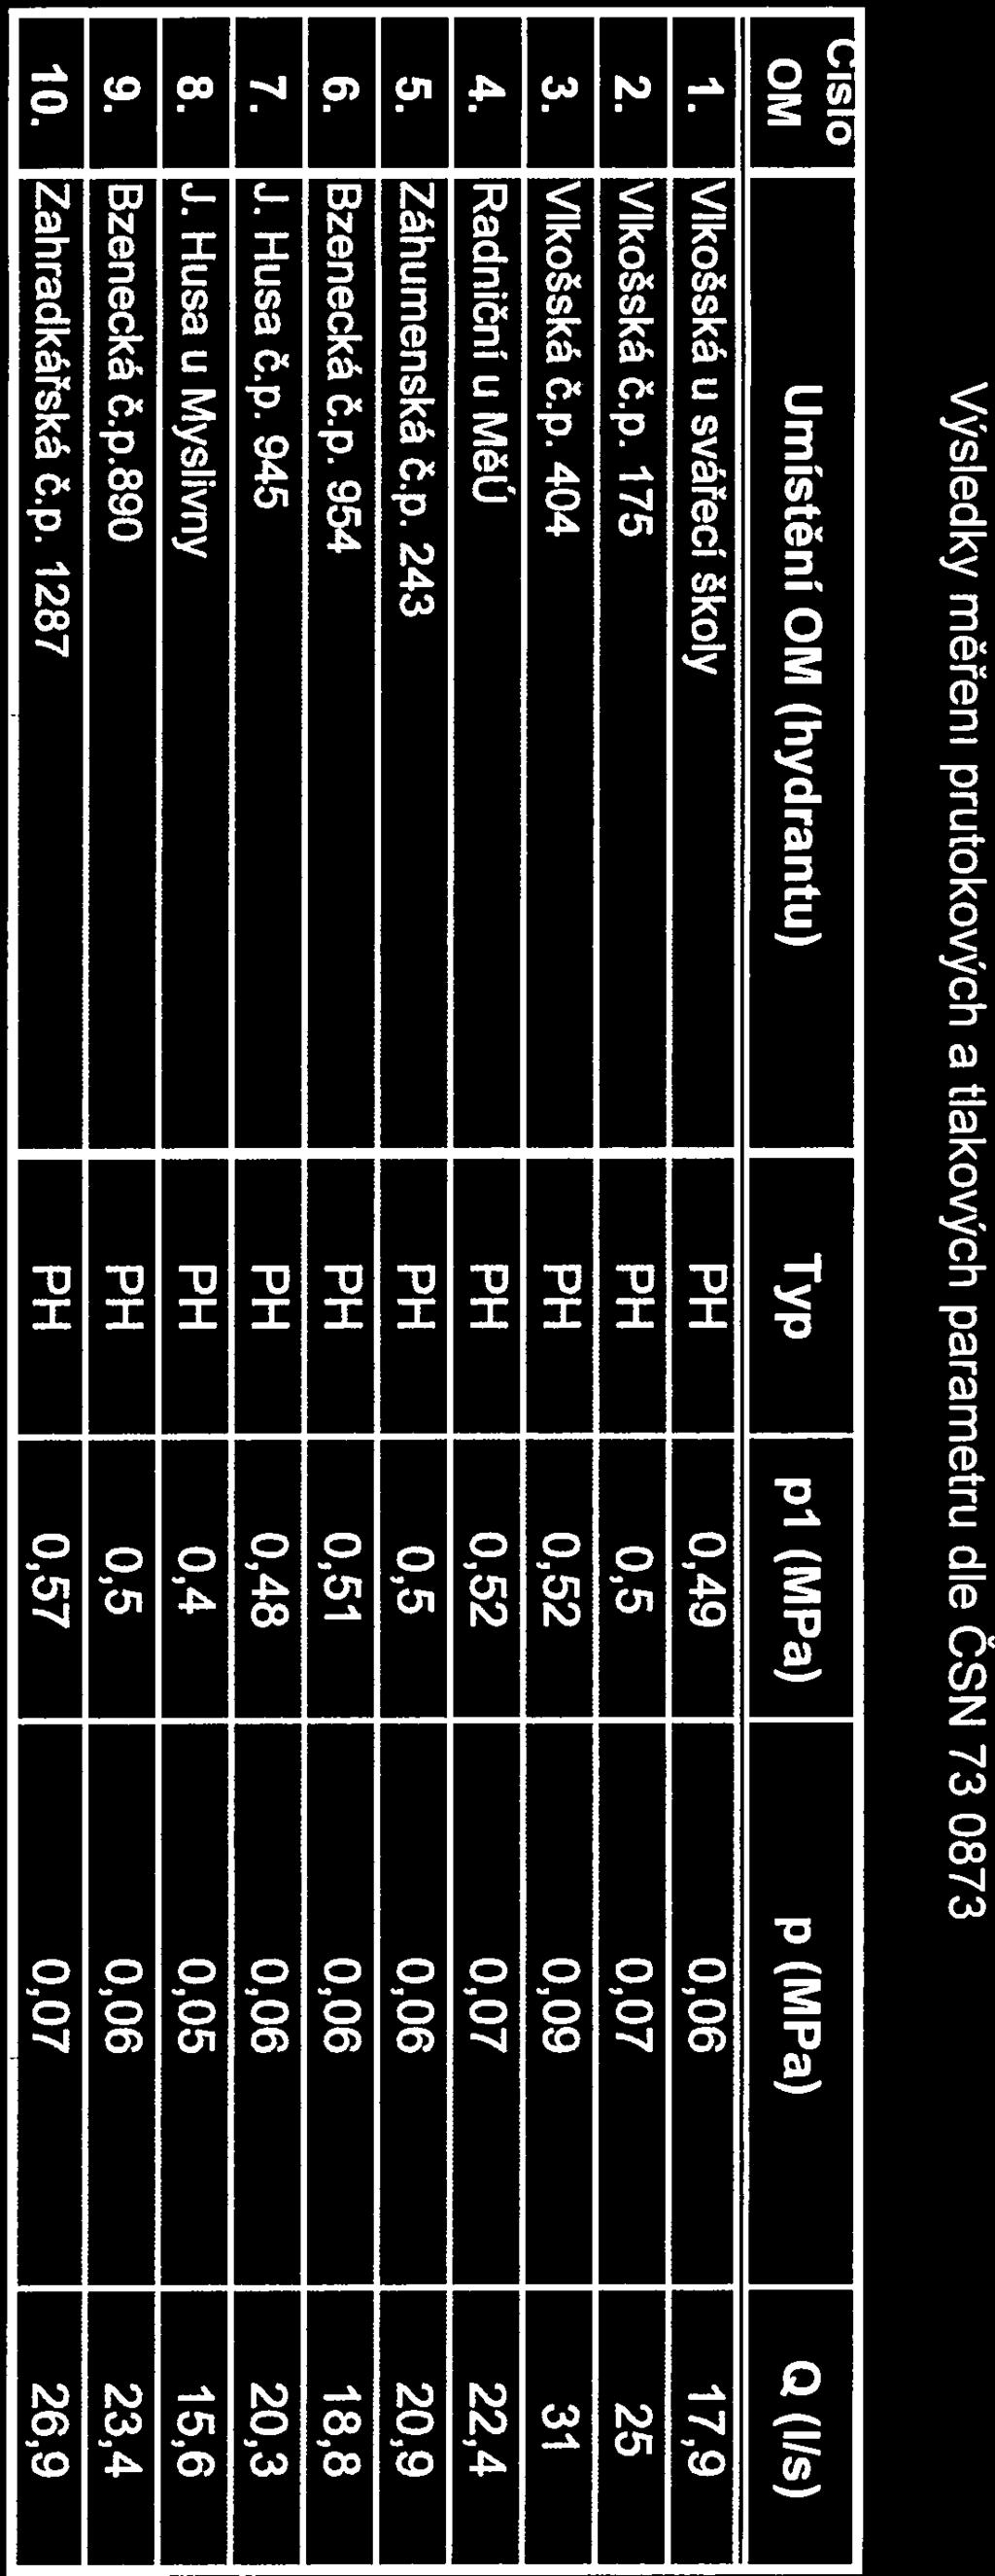 X-l O-VaK Výsledky měřenĺ průtokových a tlakových parametrů dle ČSN 73 0873 isio OM Umistení OM (hydrantu) Typ p1 (M Pa) p (M Pa) Q (Ils) 1. VlkoŠská u svářecí školy PH 0,49 0,06 17,9 2. Vlkošská č.p. 175 PH 0,5 0,07 25 3.